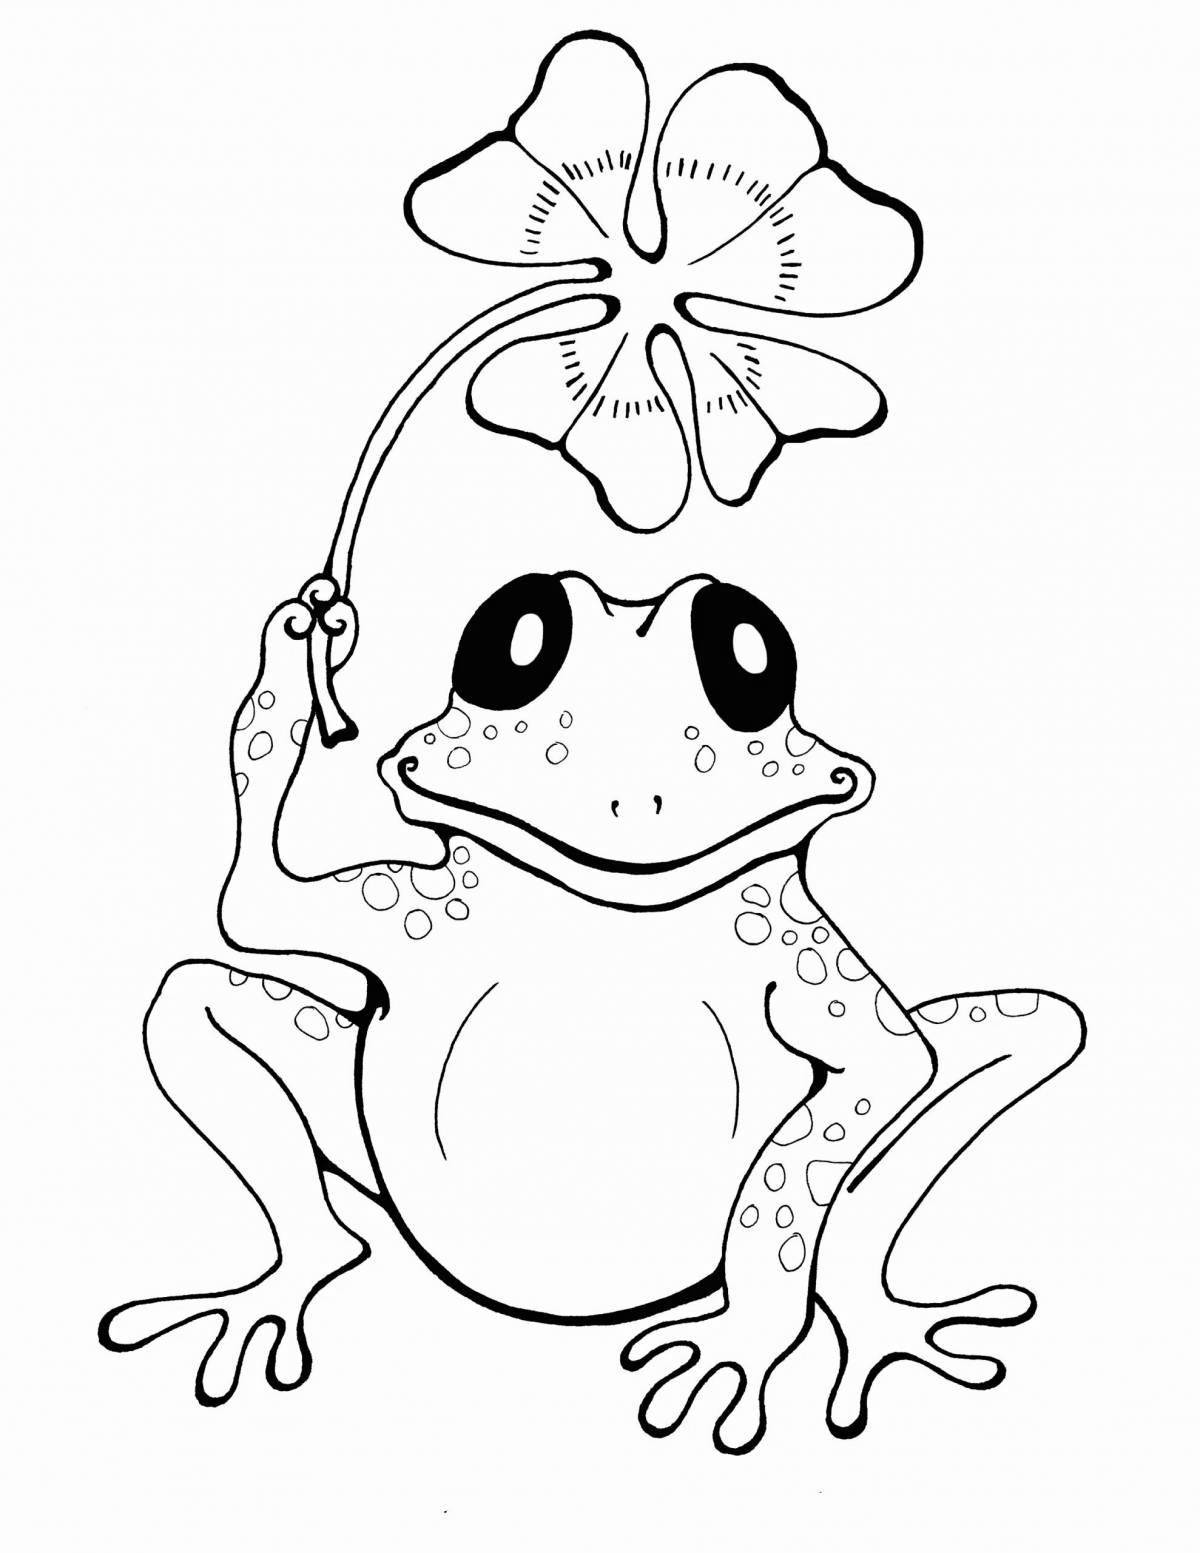 Веселая раскраска милая лягушка